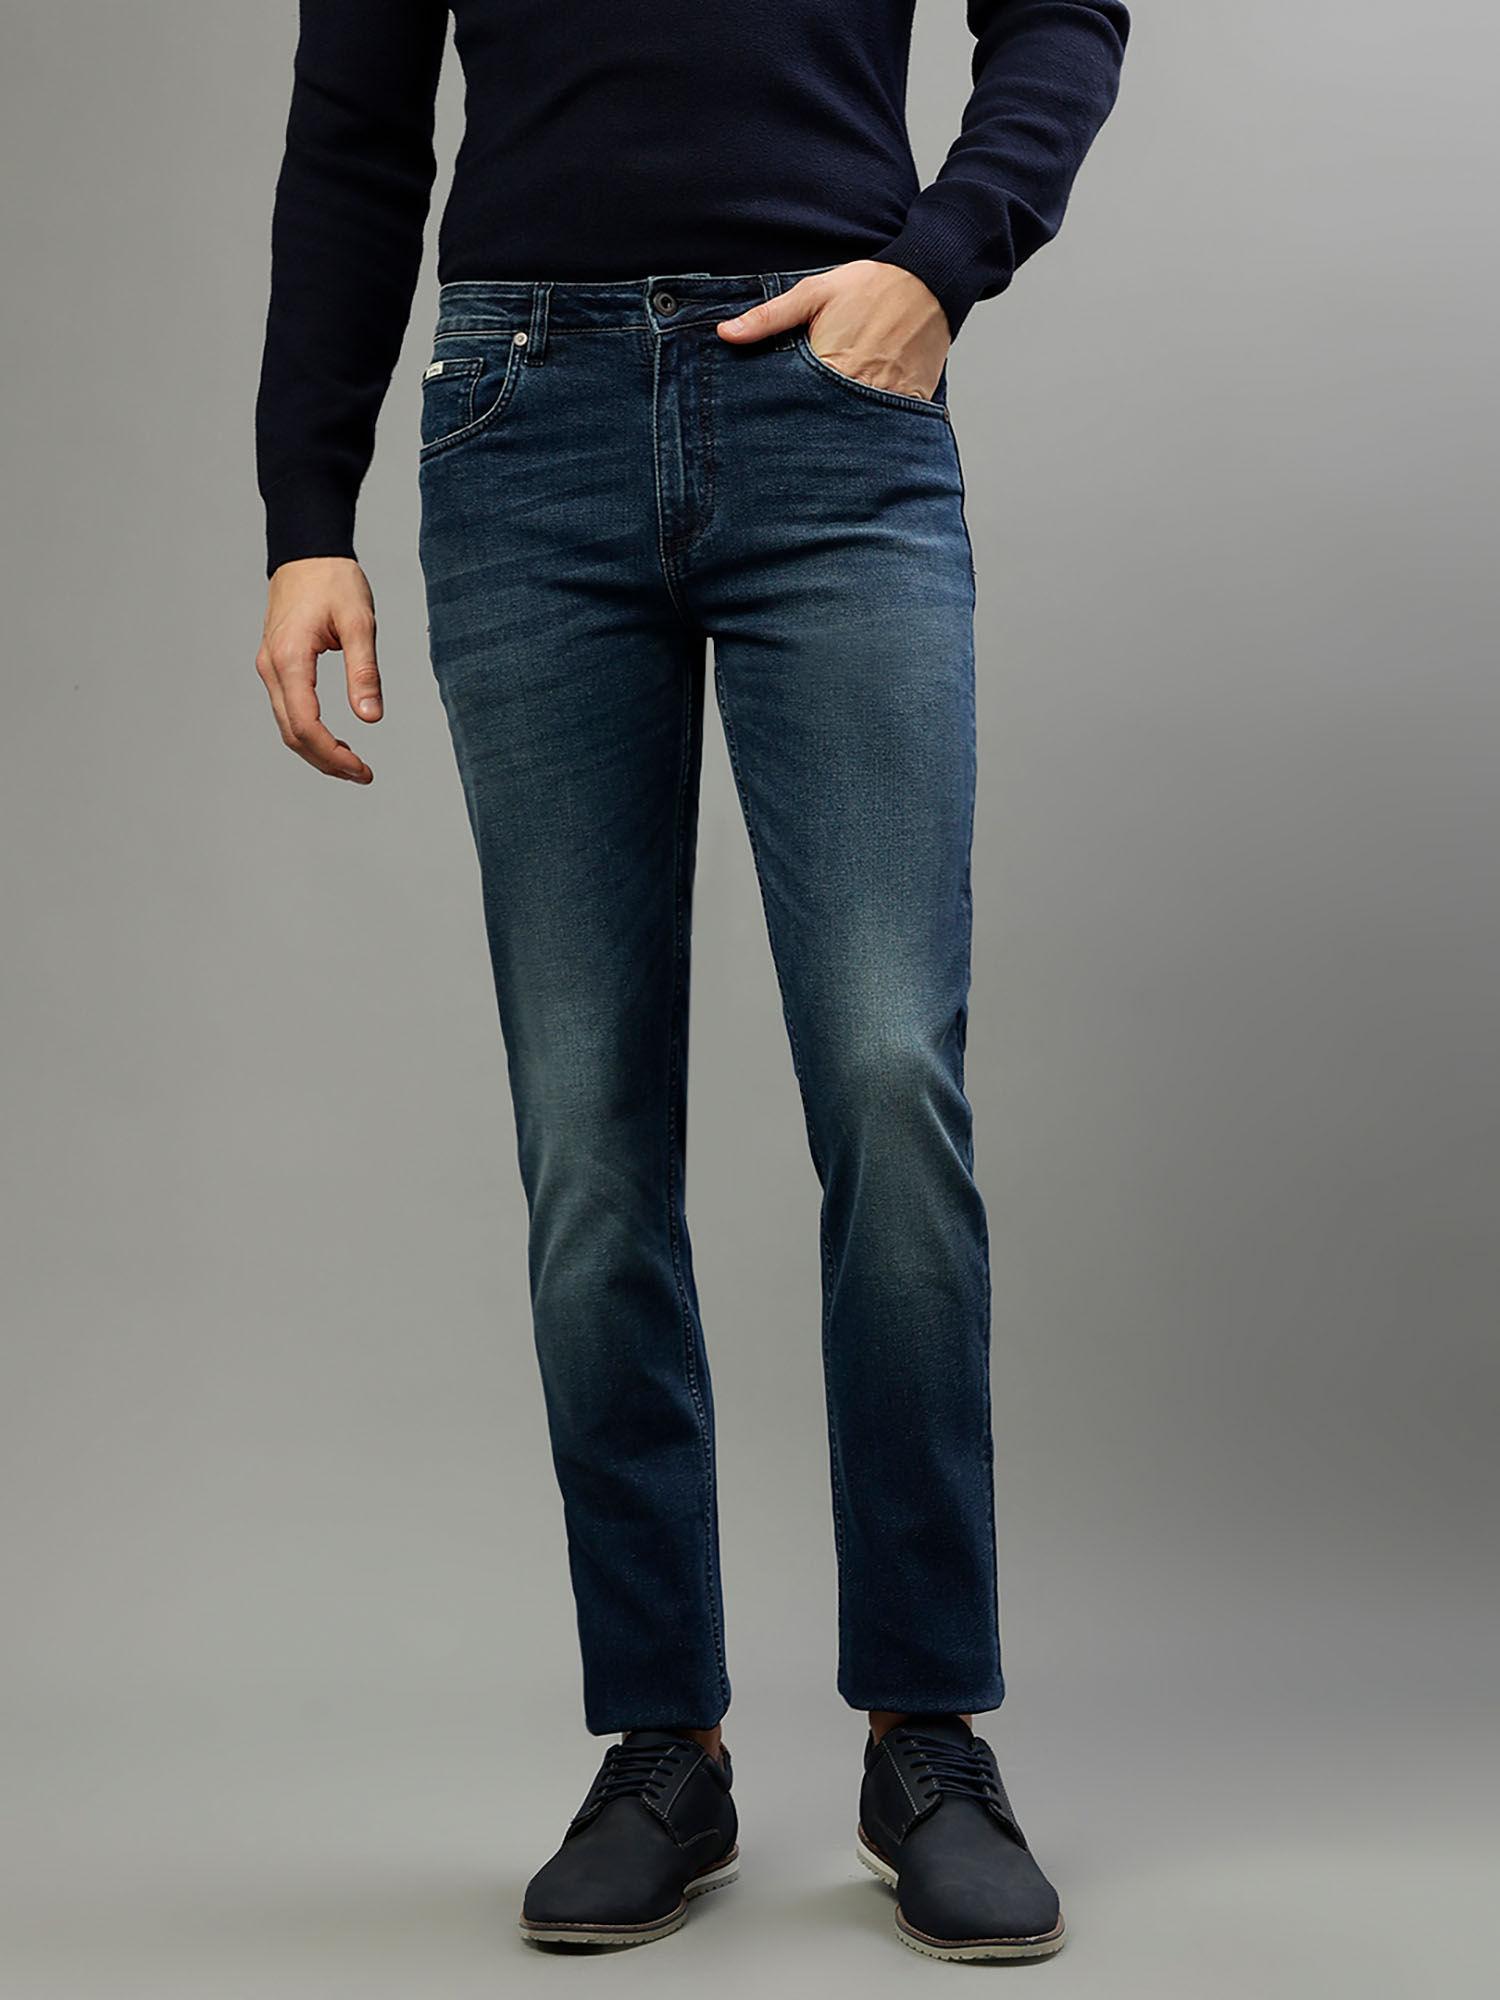 men solid blue skinny jeans